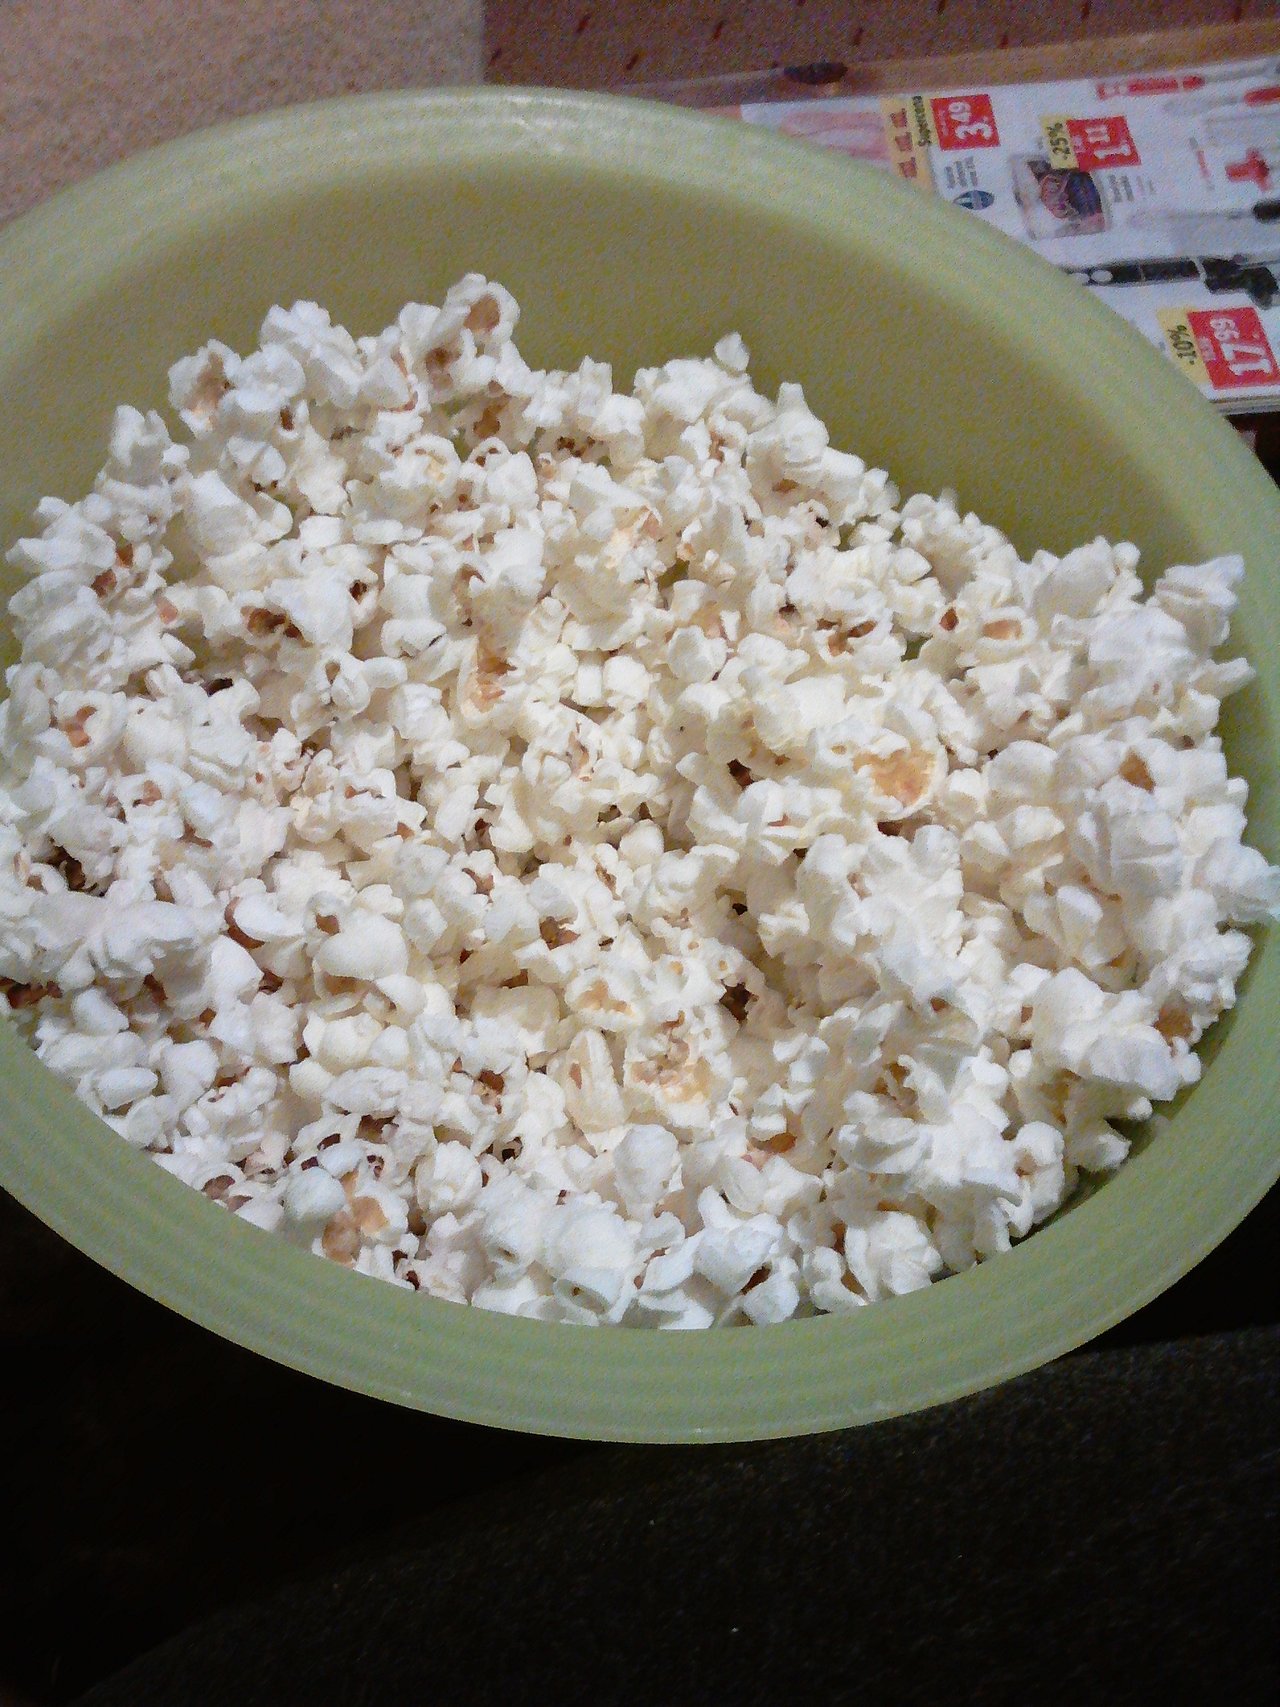 Niečo vám ukážem,muhaha :D..popcorn,muhaha :)!